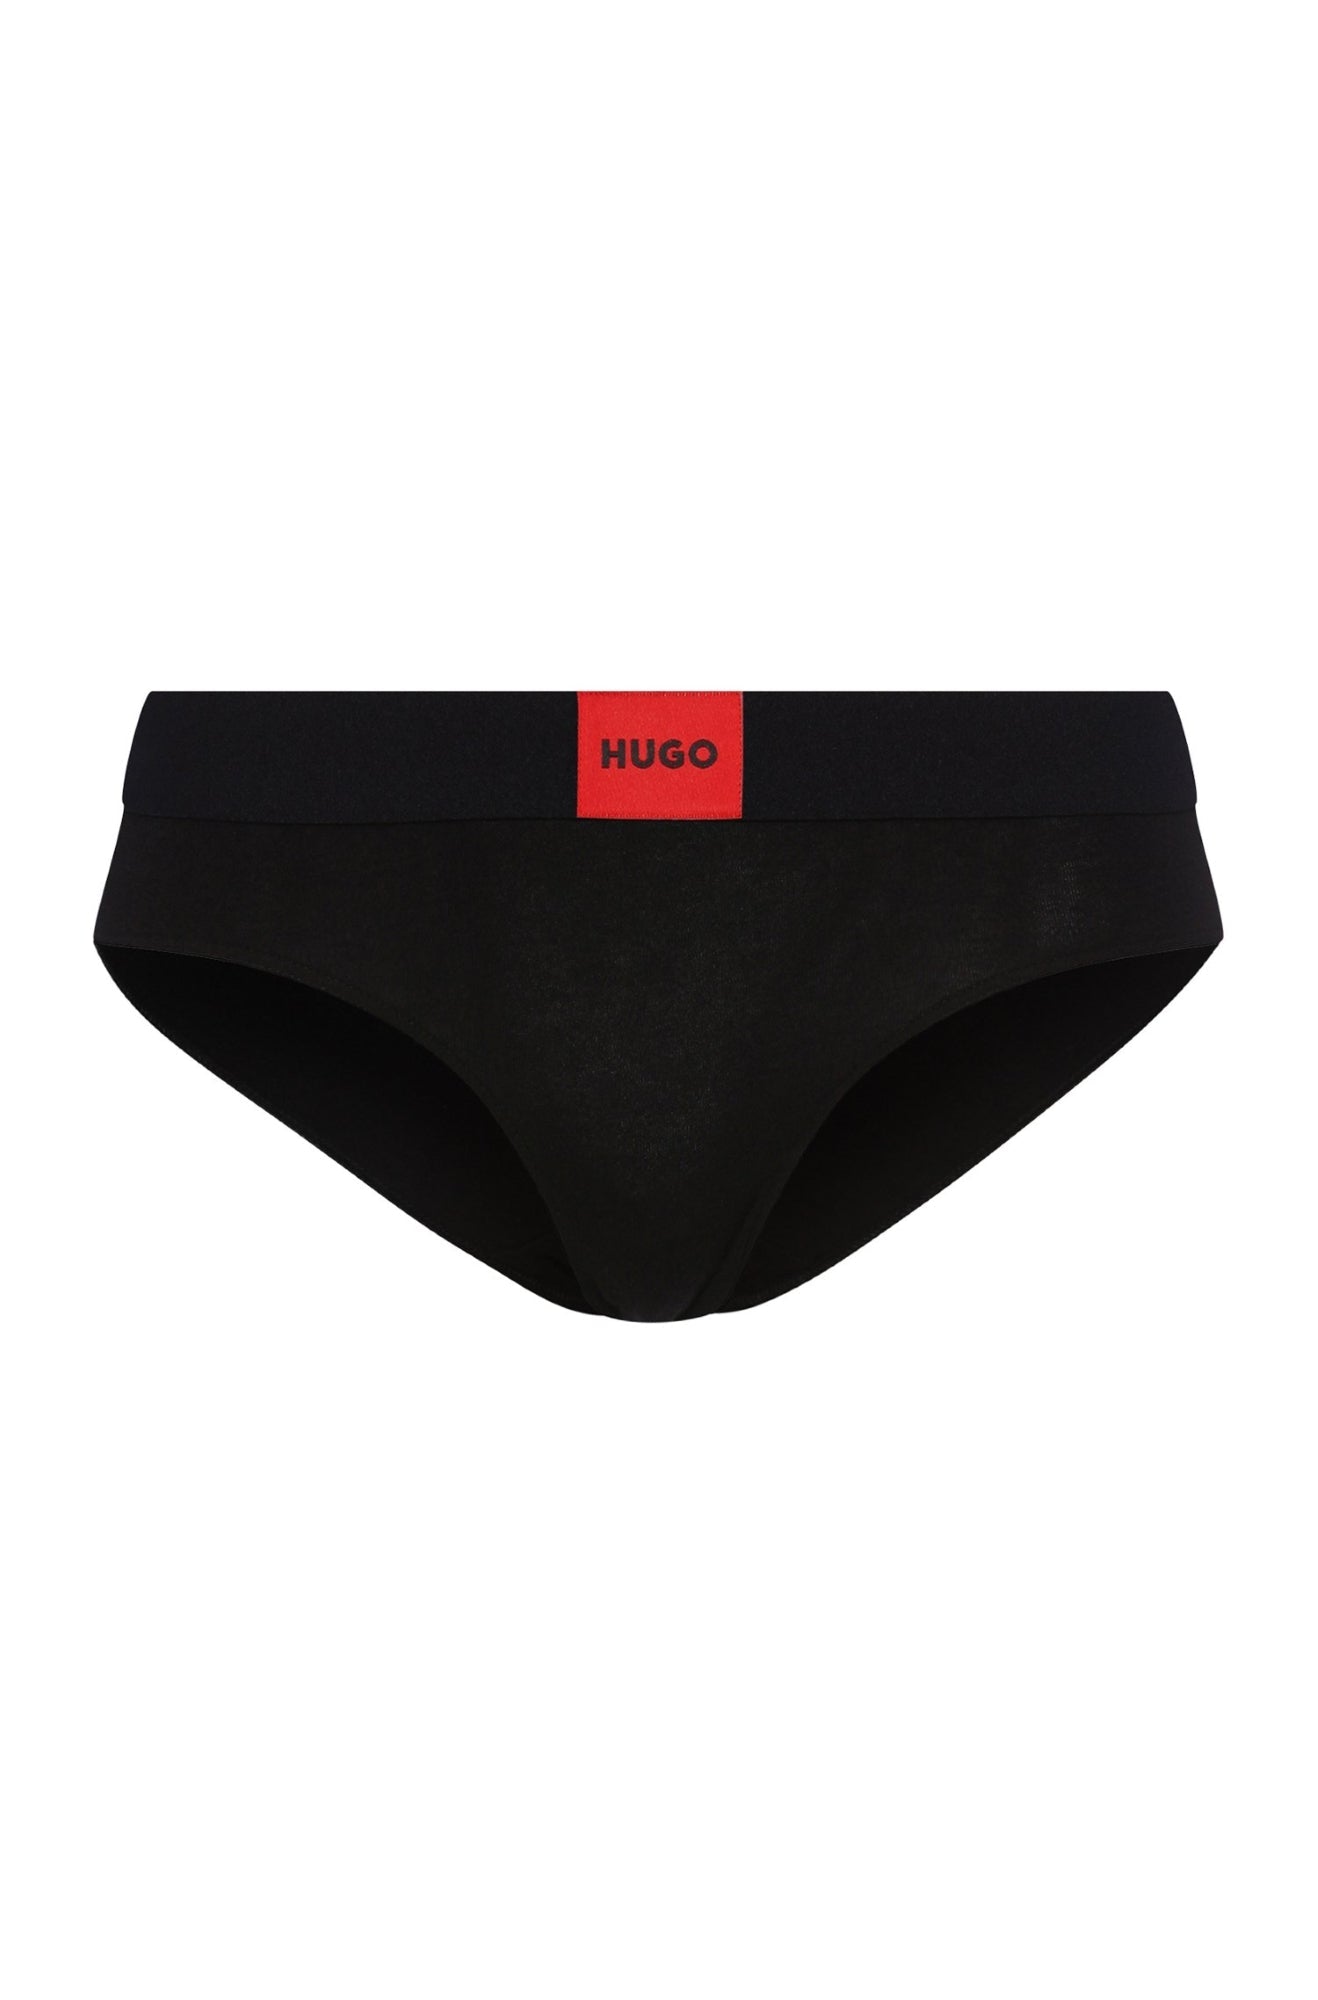 Sous-vêtement mode pour homme & femme par HUGO BOSS | 50469672 001-BLACK | Boutique Vvög, vêtements mode pour homme & femme